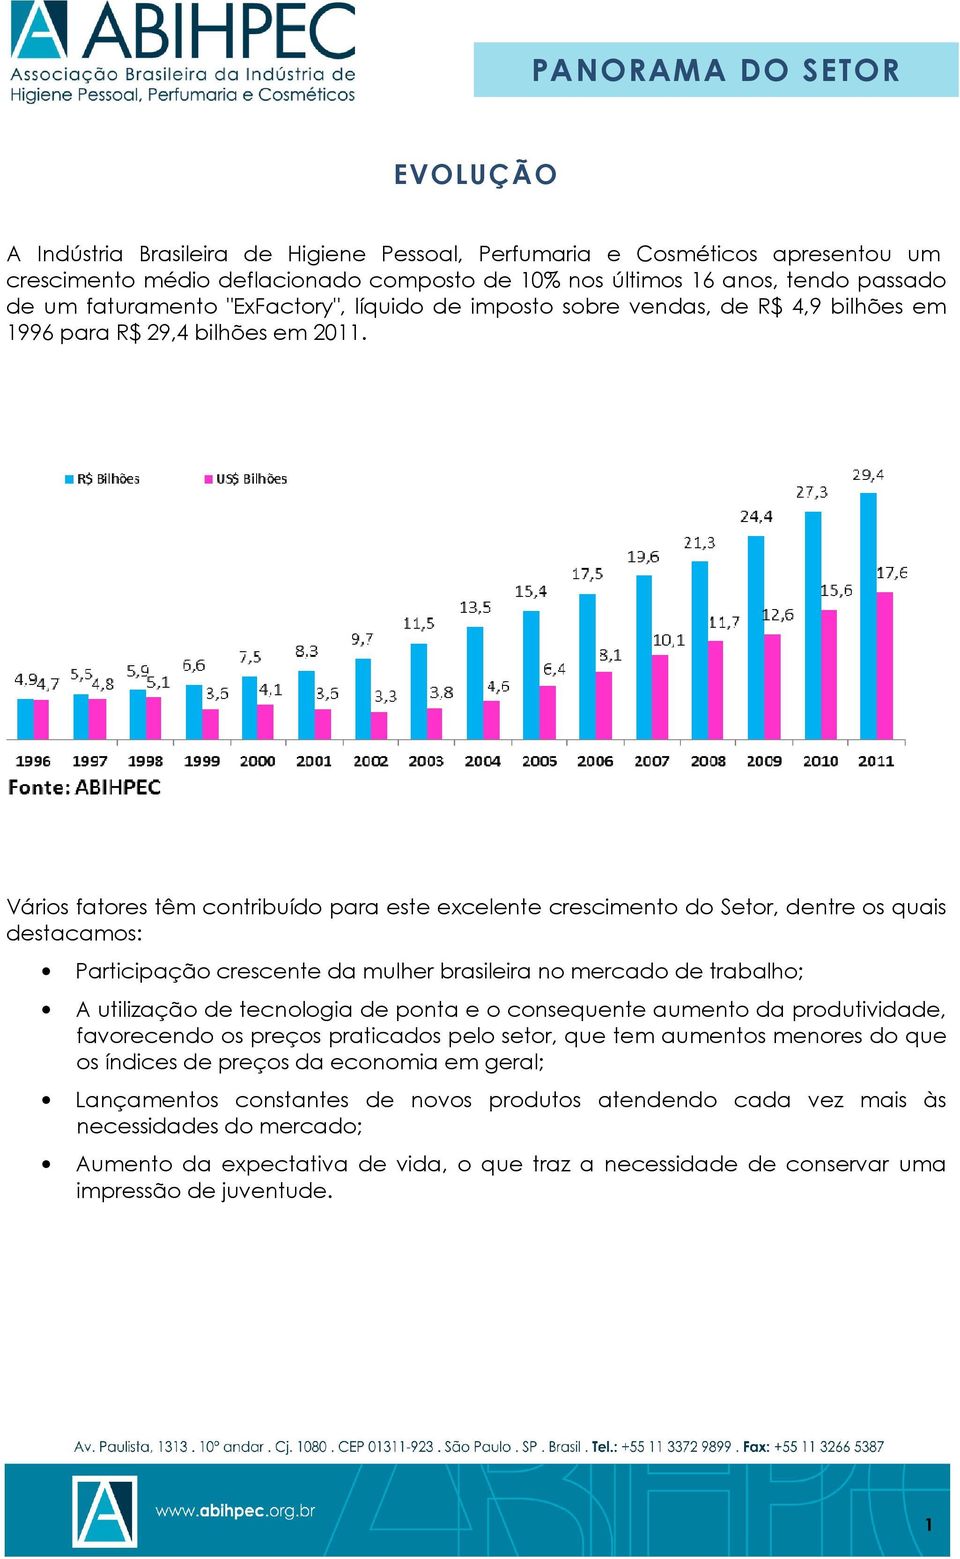 Vários fatores têm contribuído para este excelente crescimento do Setor, dentre os quais destacamos: Participação crescente da mulher brasileira no mercado de trabalho; A utilização de tecnologia de